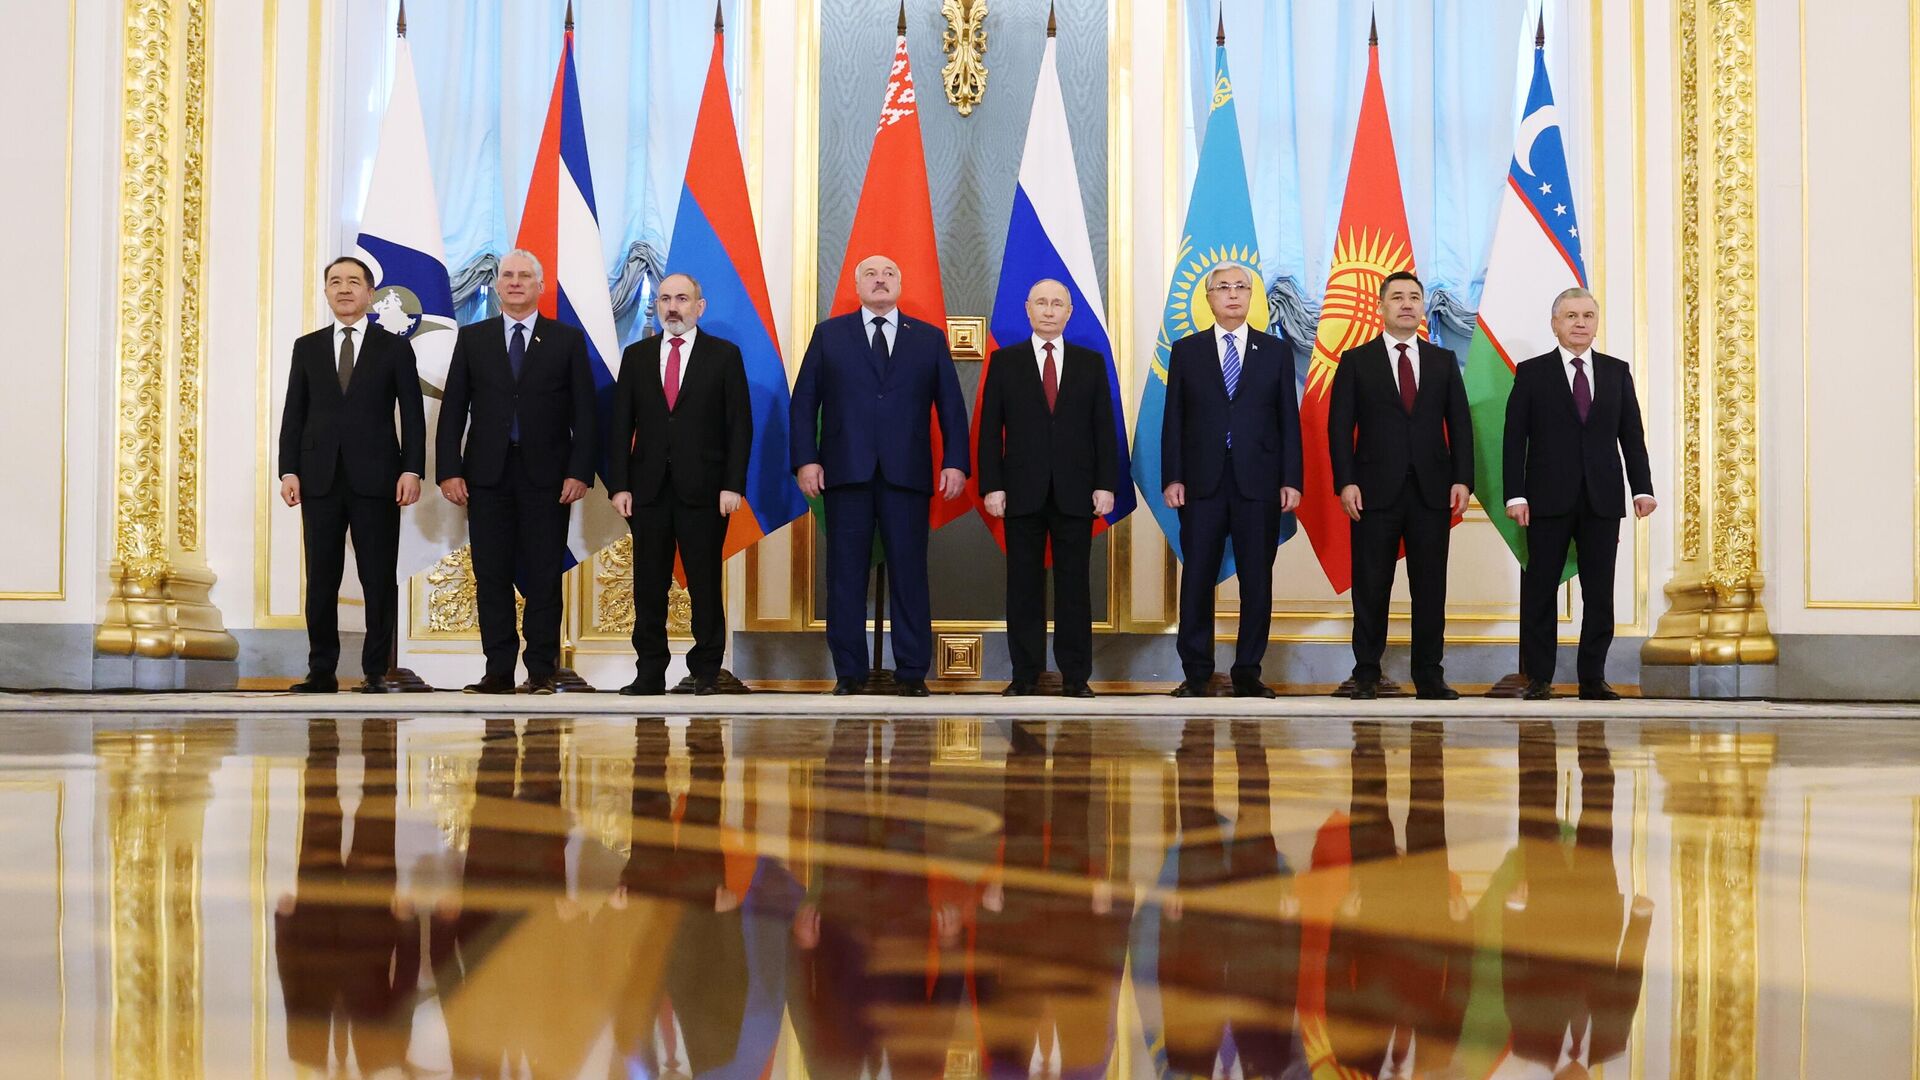 Общее фотографирование лидеров стран — участниц Евразийского экономического союза (ЕАЭС) в Москве1